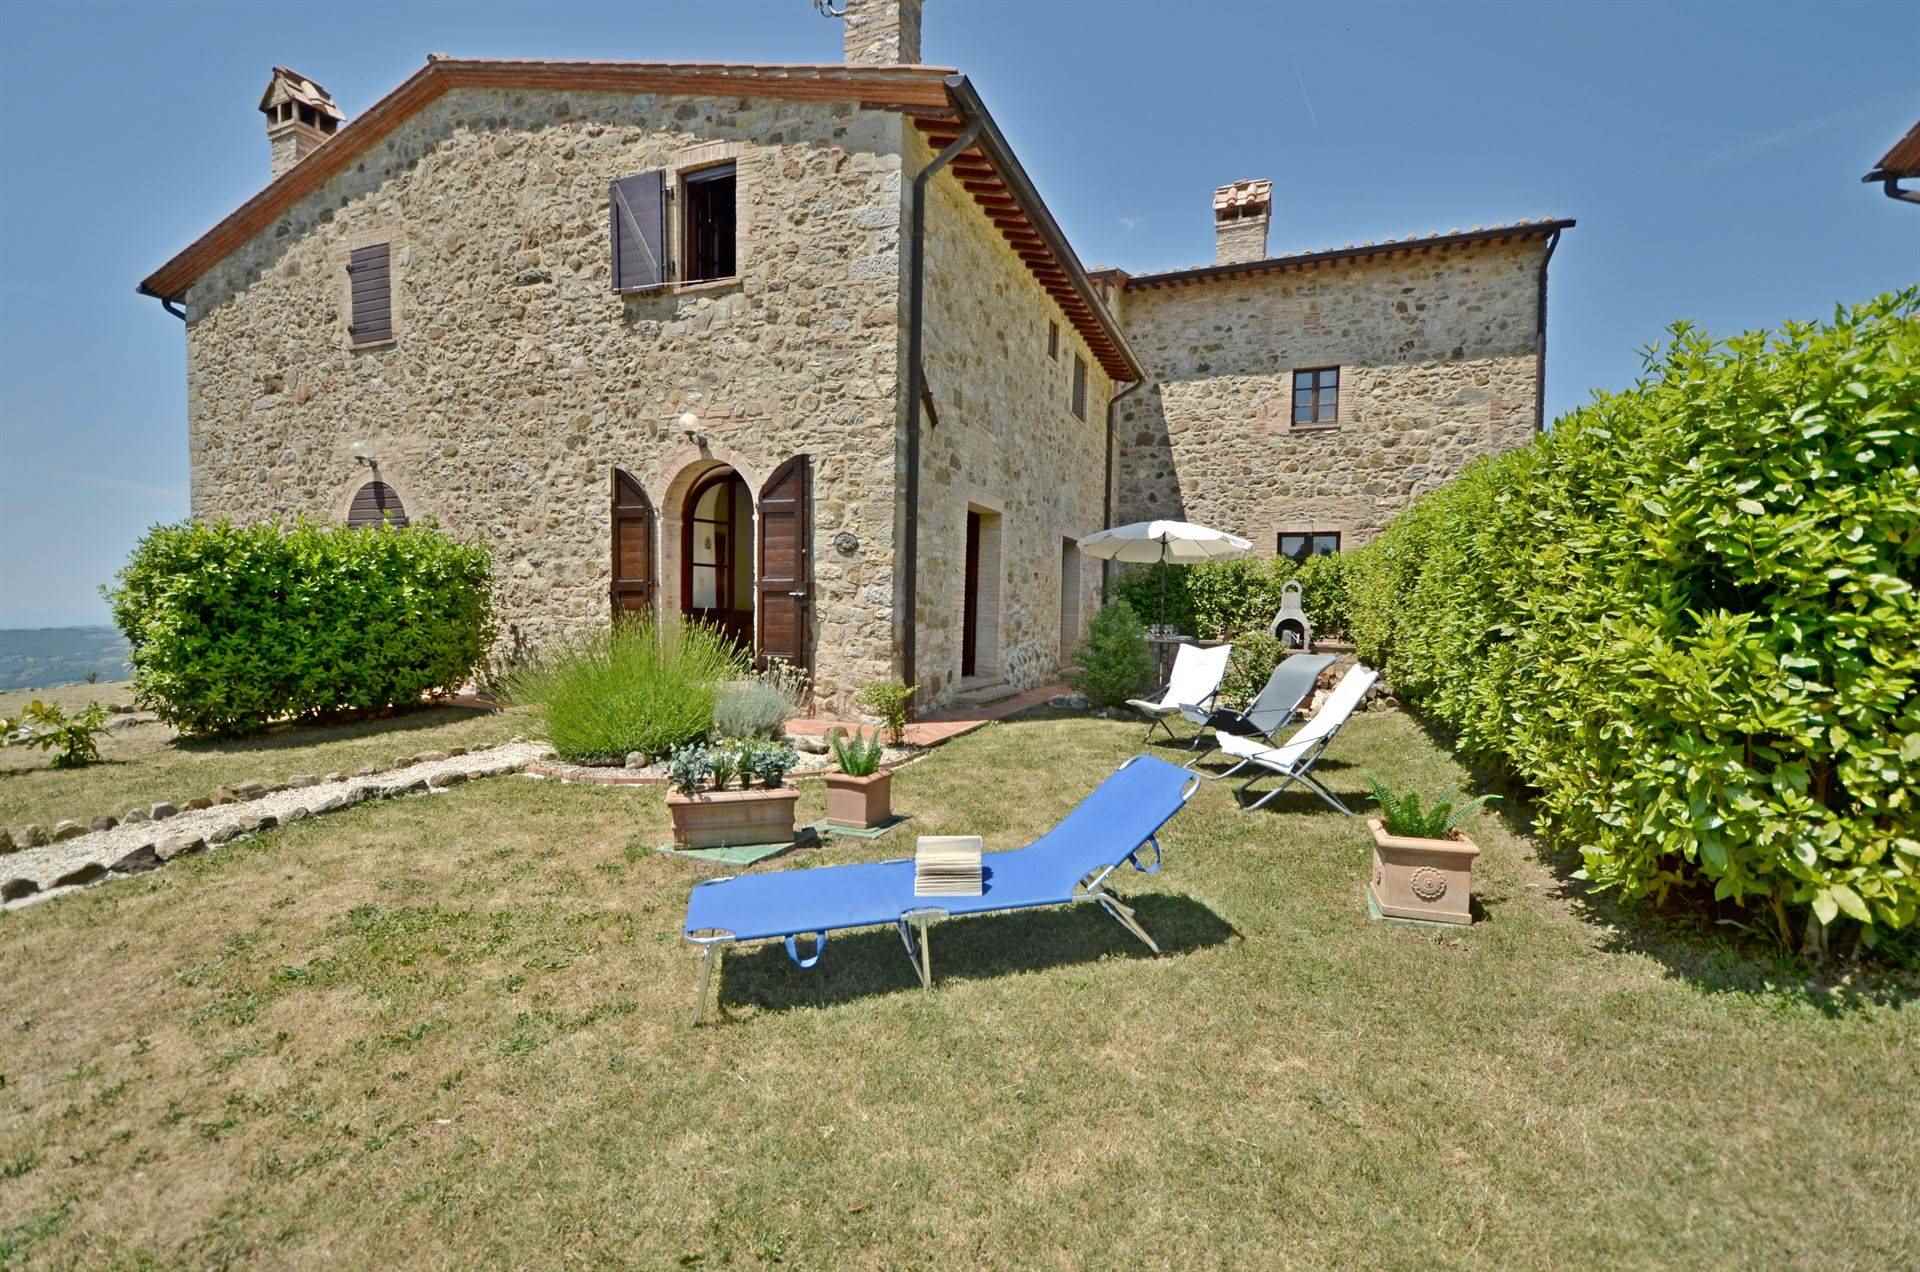 Rustico / Casale in affitto a Roccalbegna, 3 locali, zona Zona: Triana, prezzo € 4.800 | CambioCasa.it